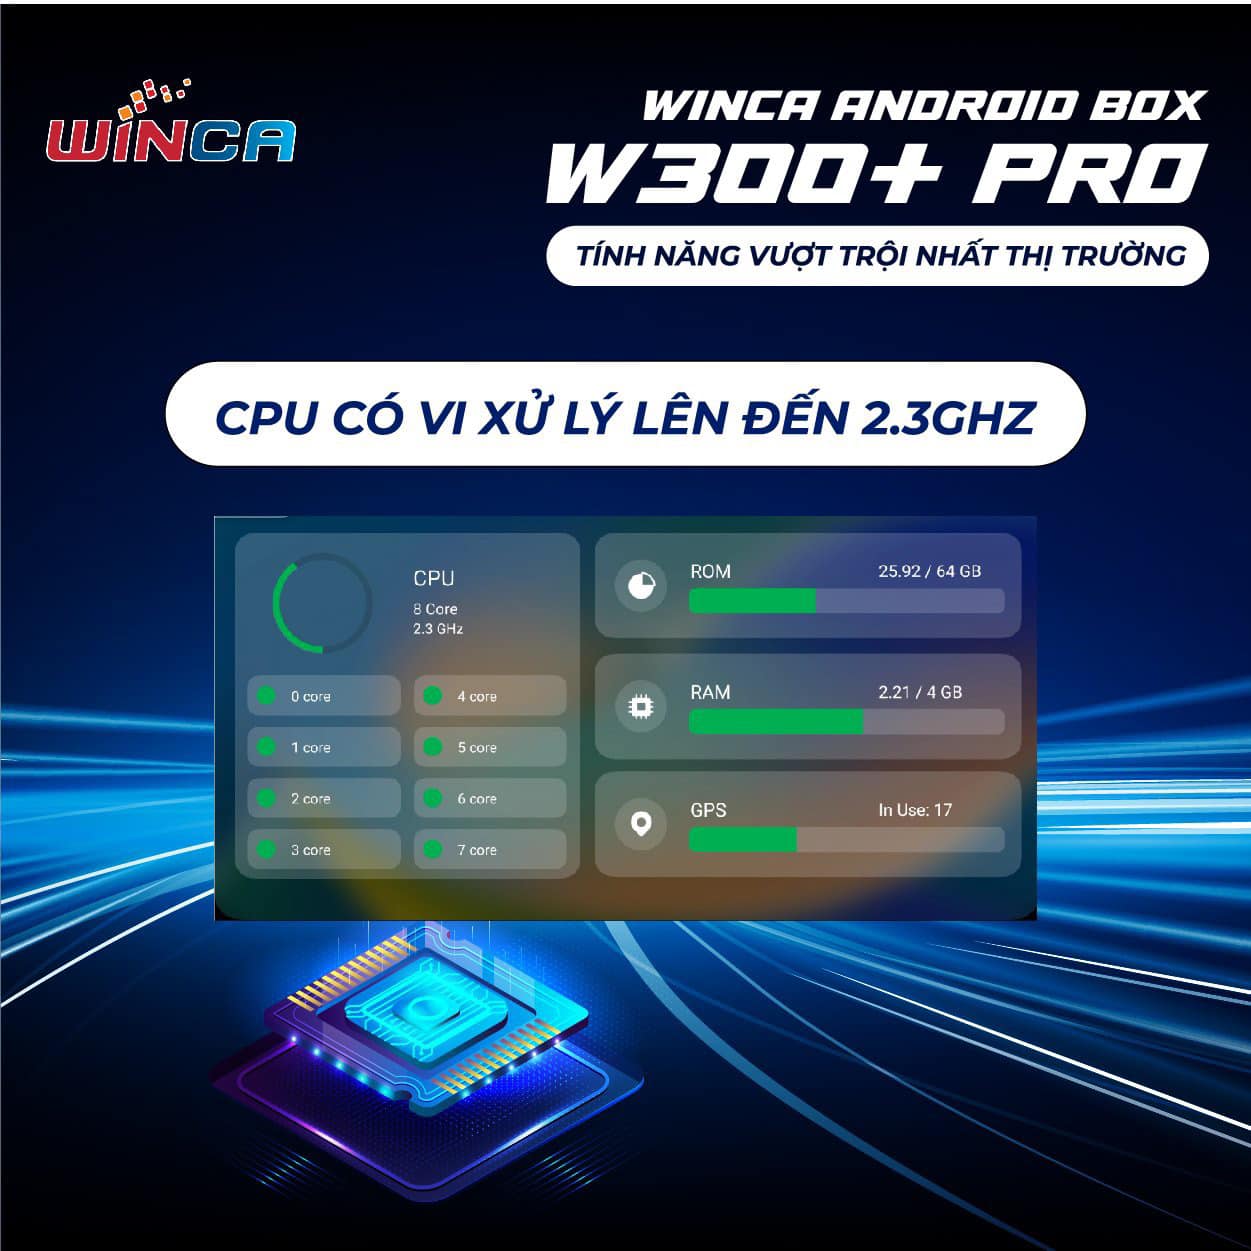 Winca Android Box W300+ Pro được trang bị vi xử lý 1.8Ghz hay thậm chí 2.0Ghz